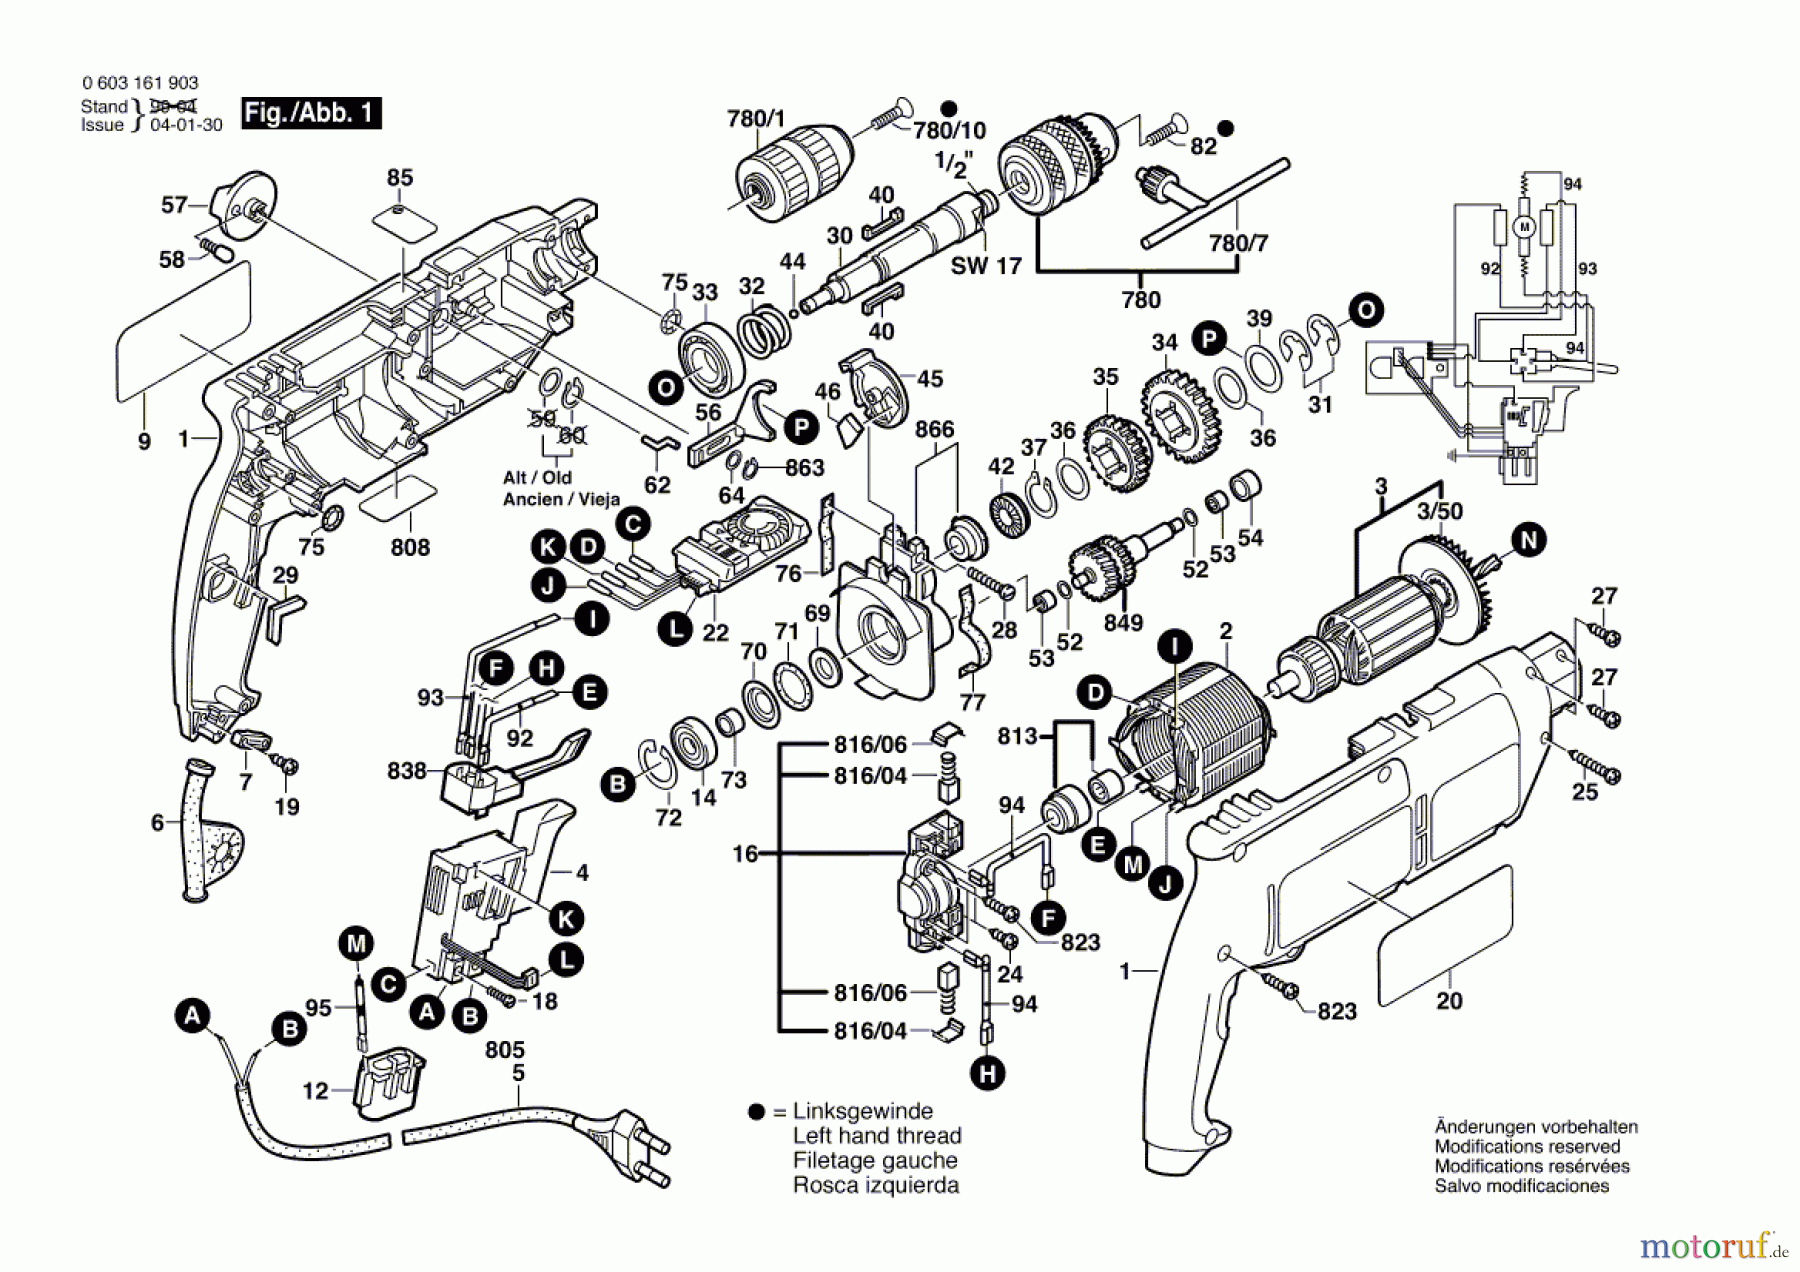  Bosch Werkzeug Schlagbohrmaschine CSB 650-2 RP Seite 1